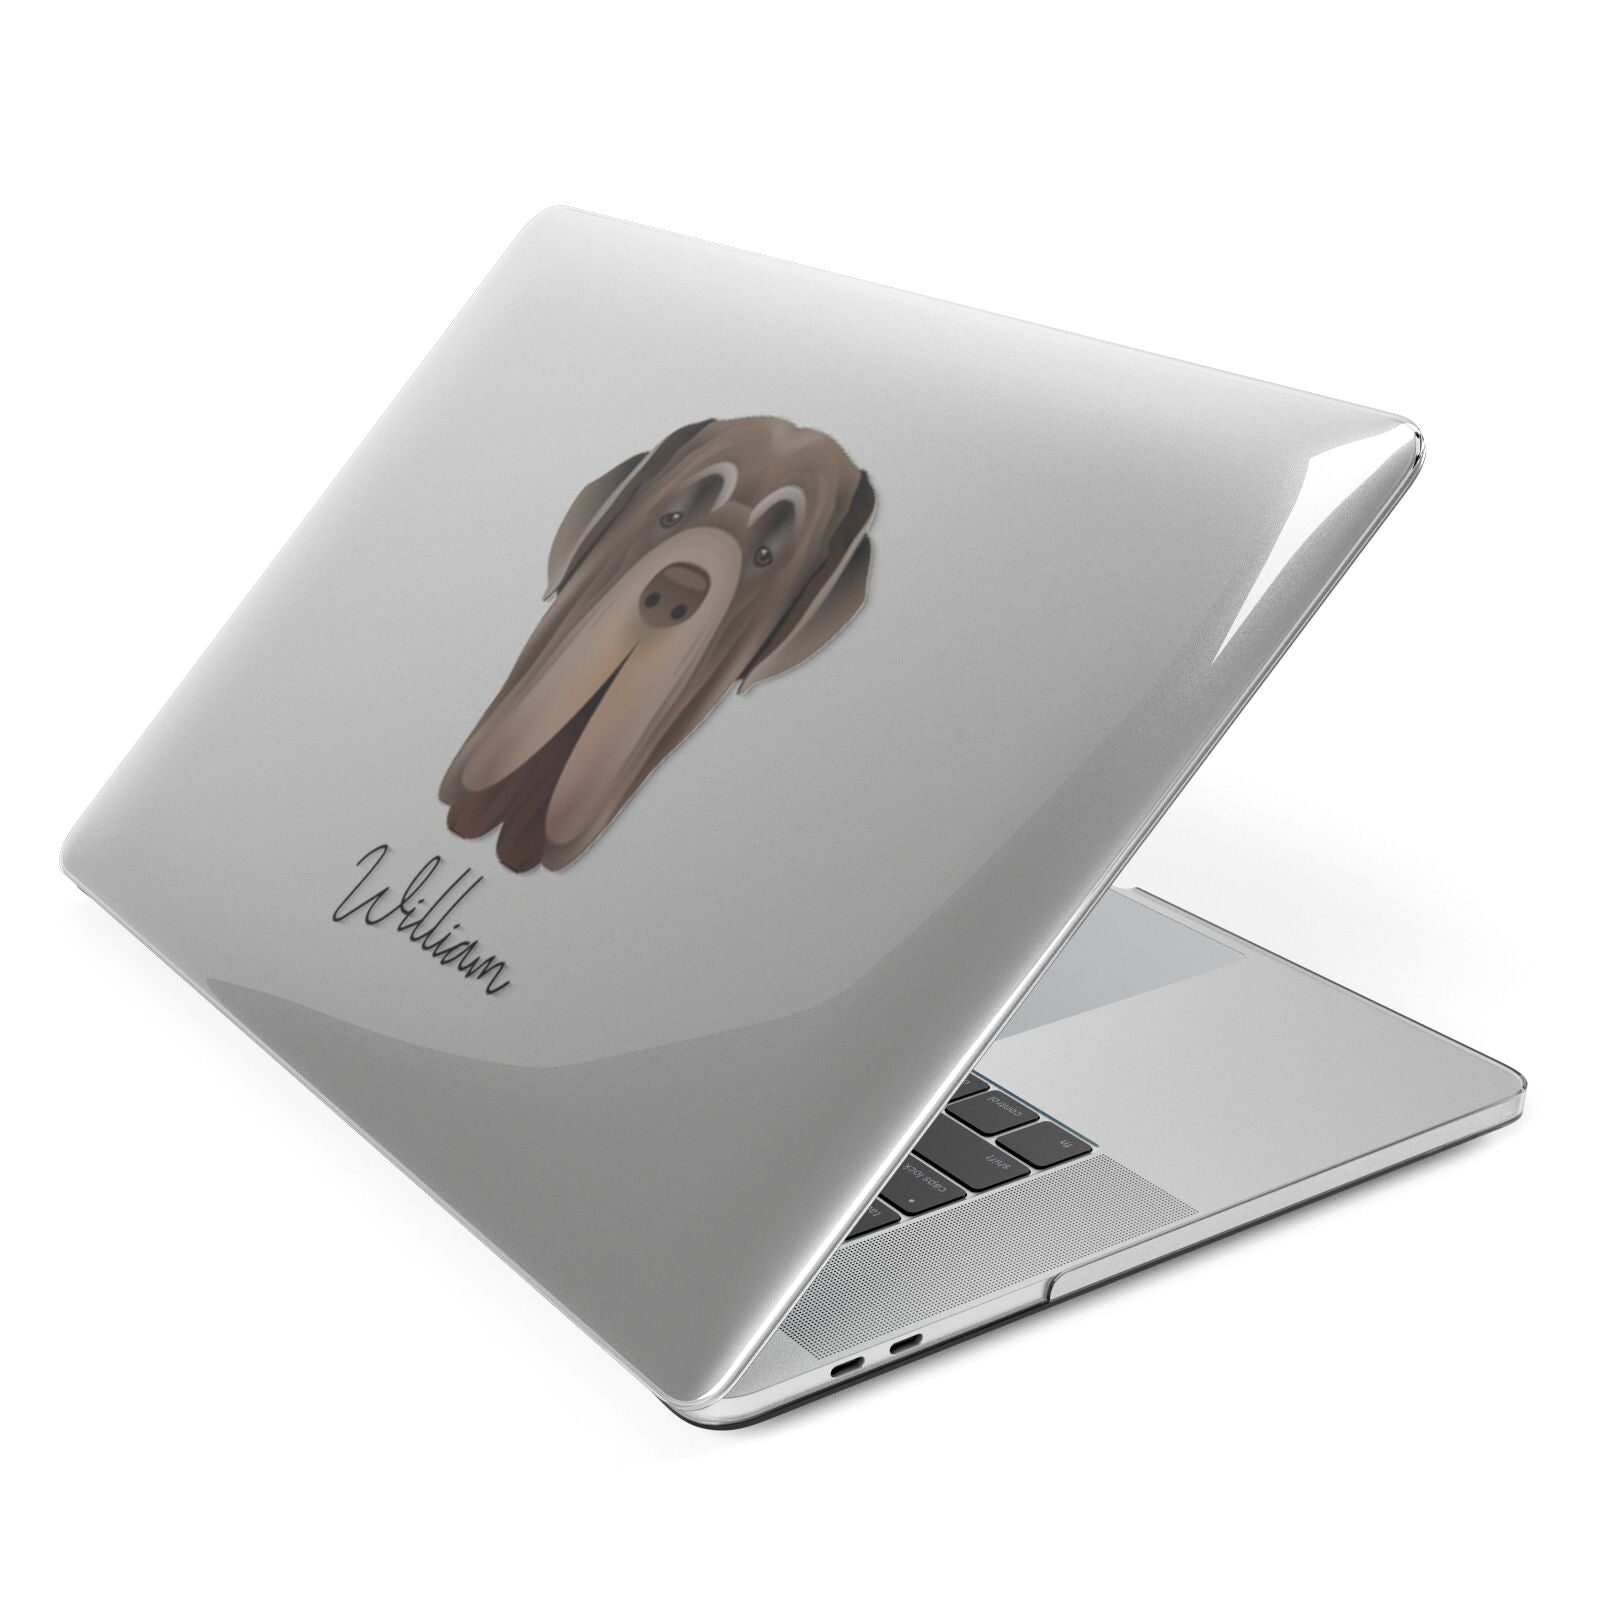 Neapolitan Mastiff Personalised Apple MacBook Case Side View